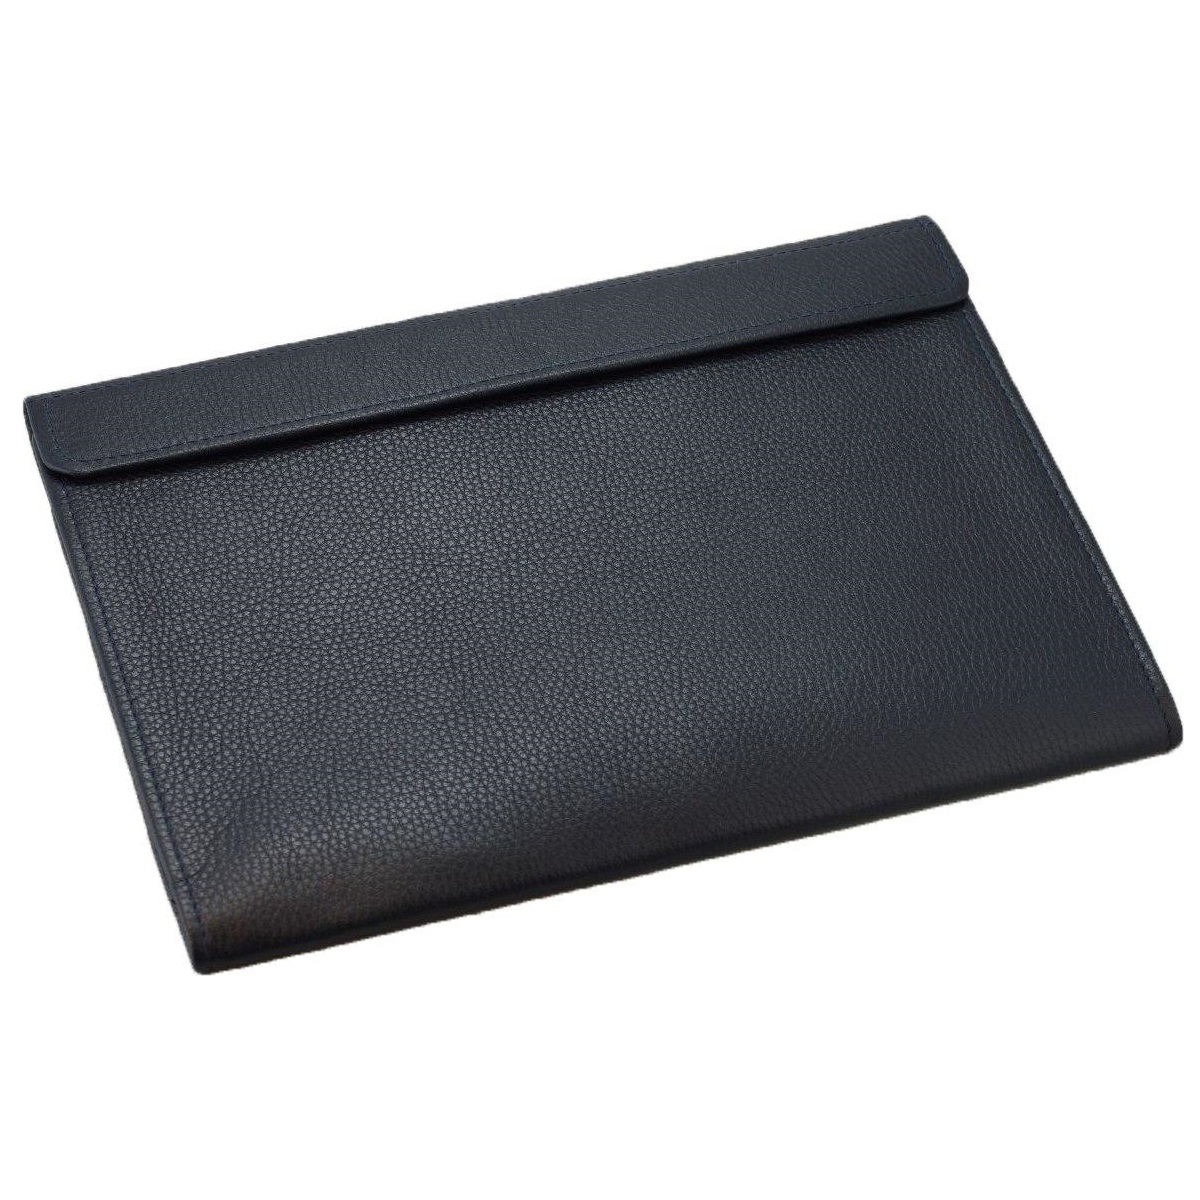 Кожаный чехол-конверт Alexander Dark Blue для Macbook Air 13/Macbook Pro 13